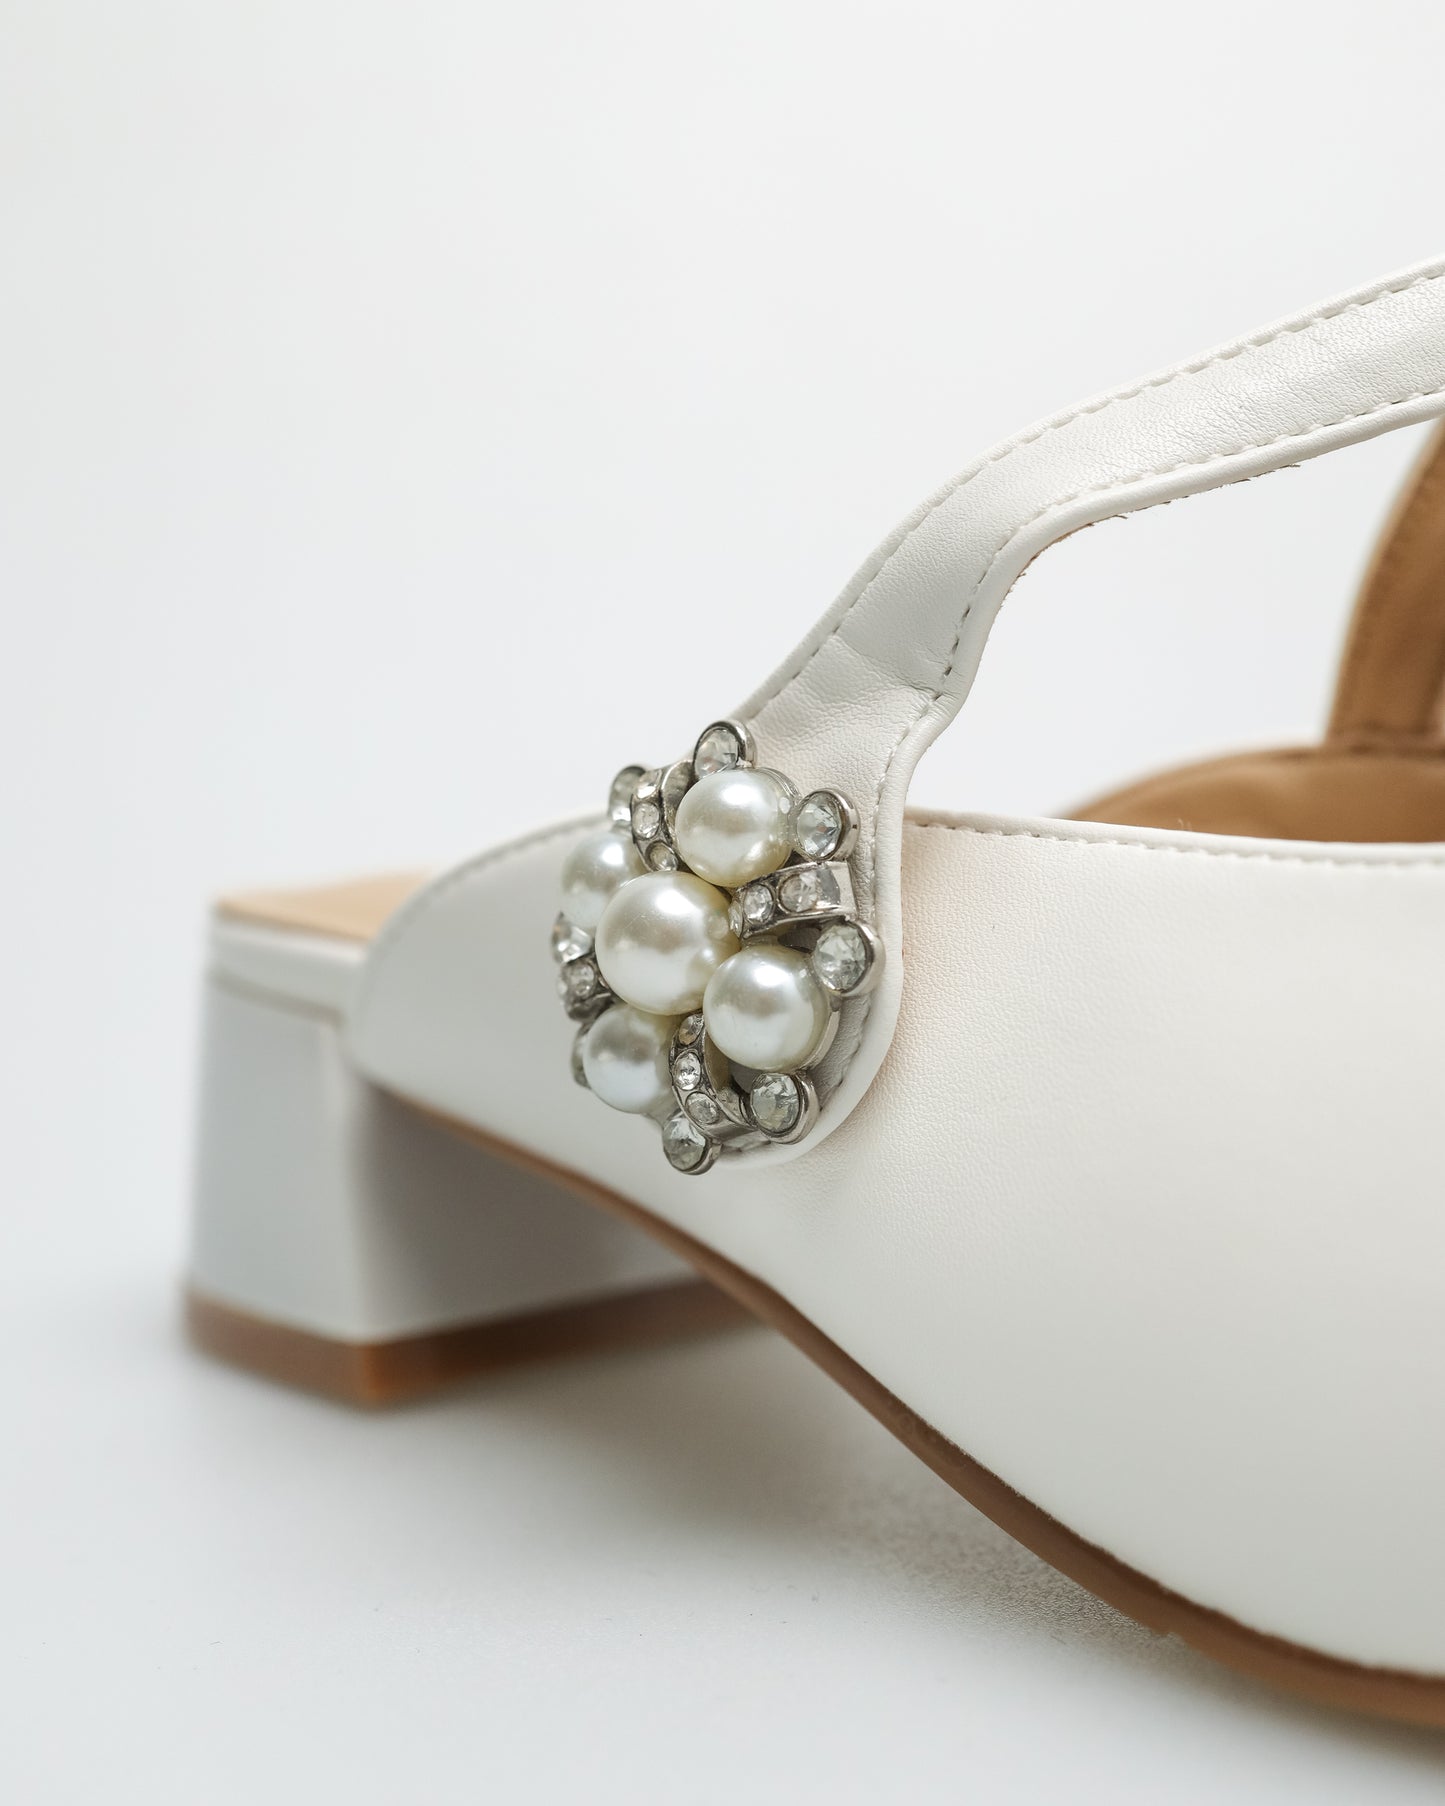 Tomaz YX110 Ladies Flower Gem Heels (White)